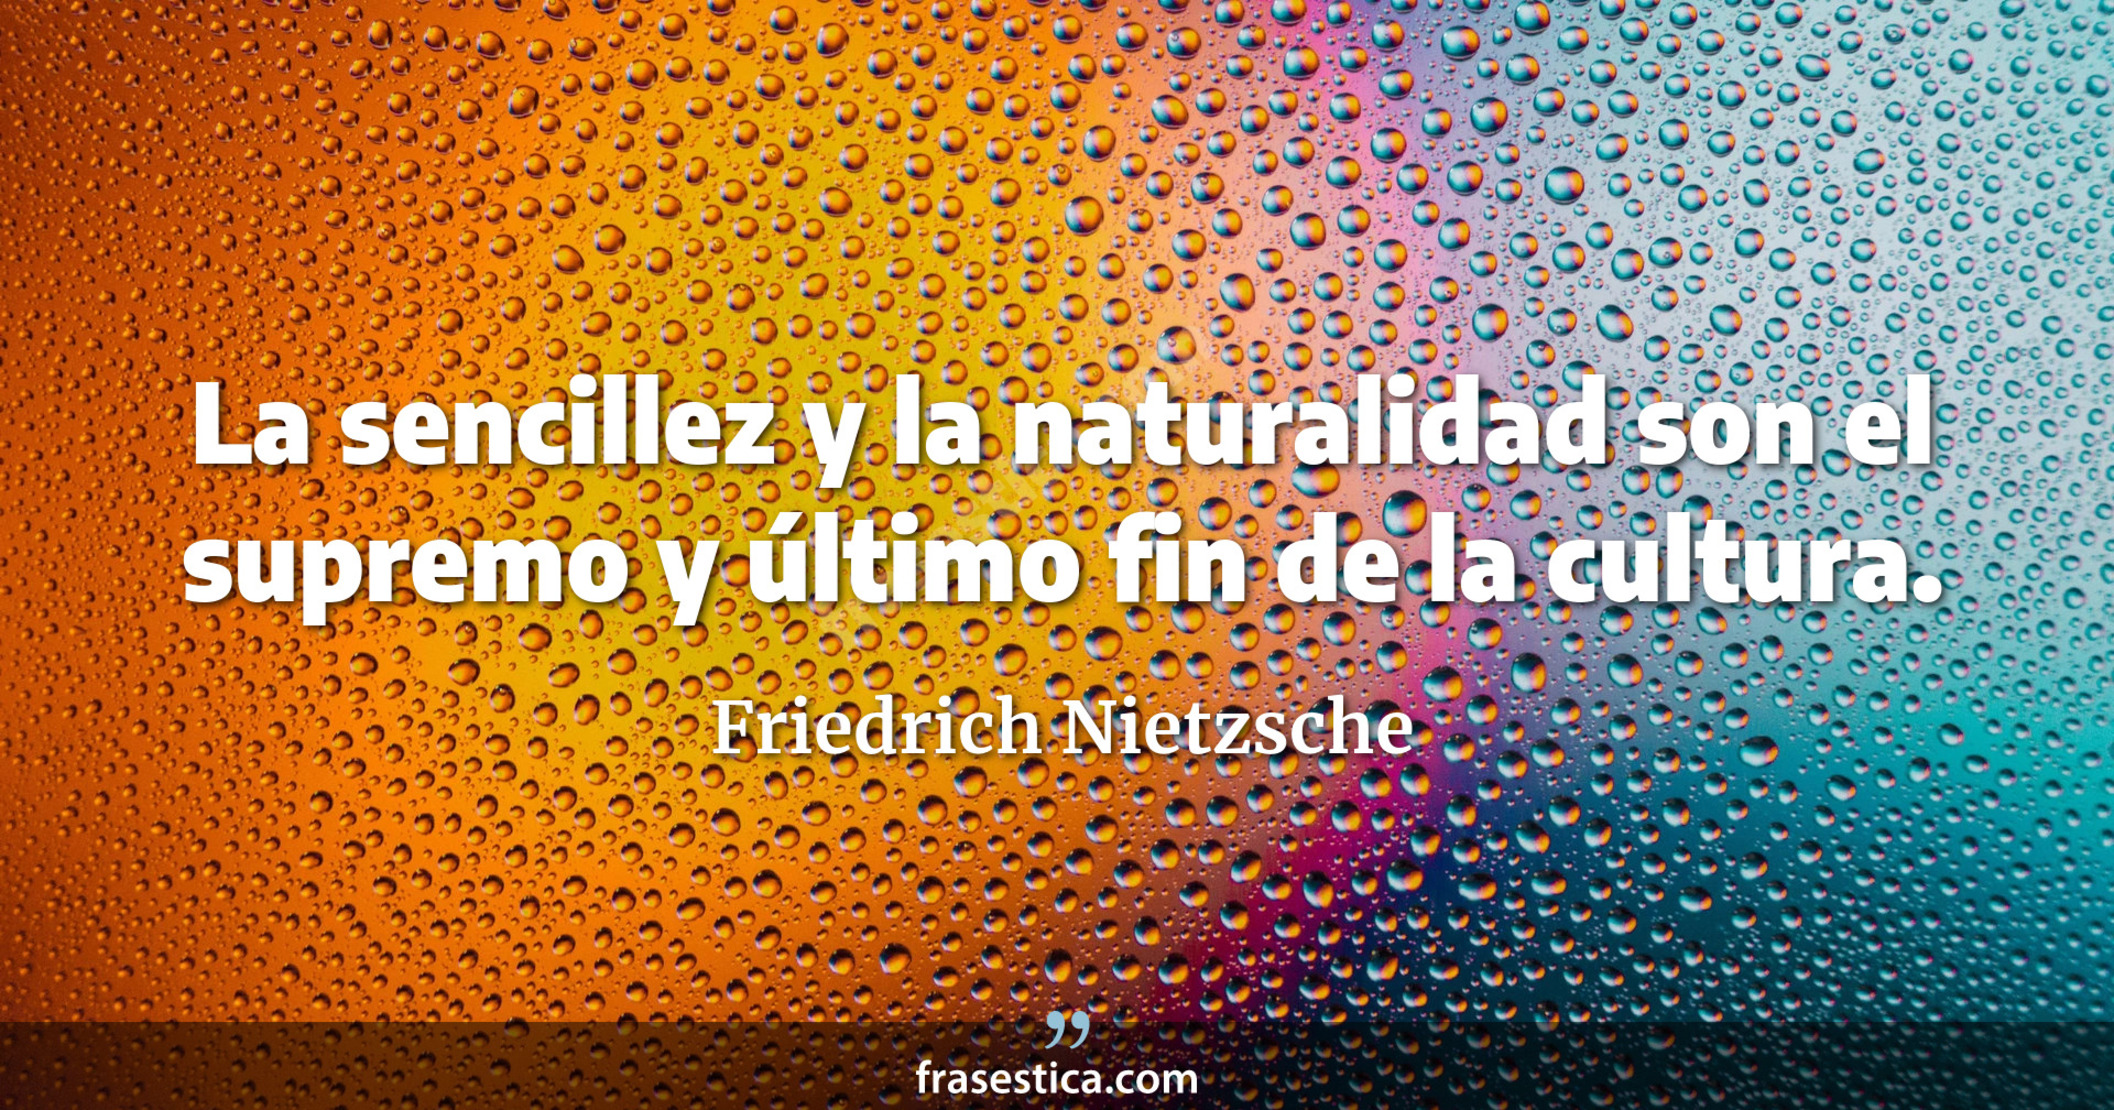 La sencillez y la naturalidad son el supremo y último fin de la cultura. - Friedrich Nietzsche